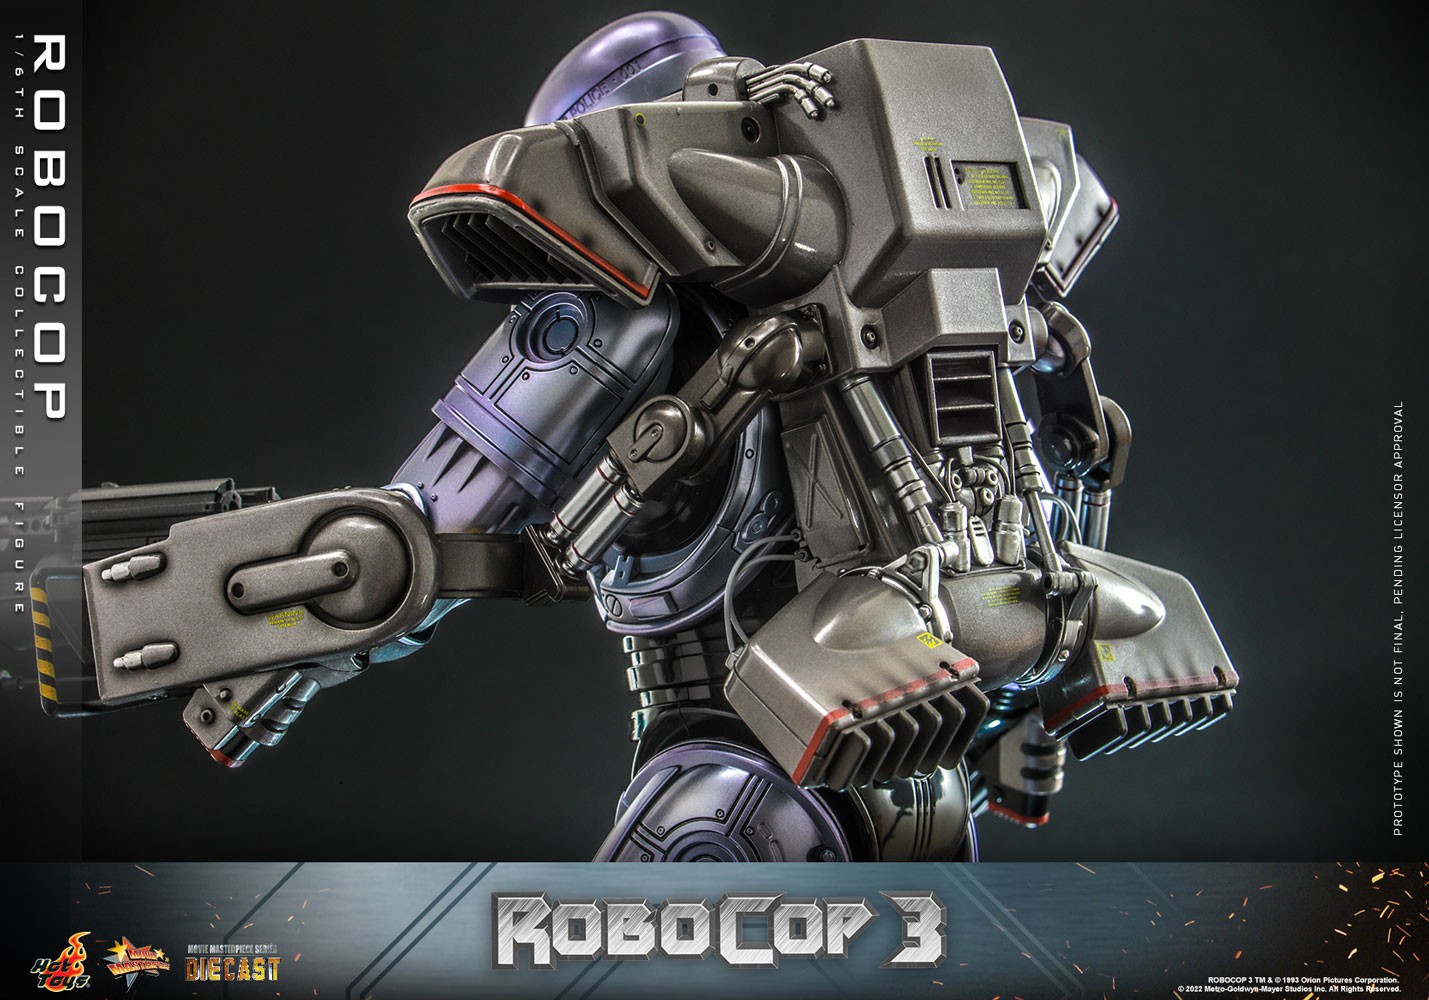 RoboCop (Special Edition) Exclusive Edition (Prototype Shown) View 4